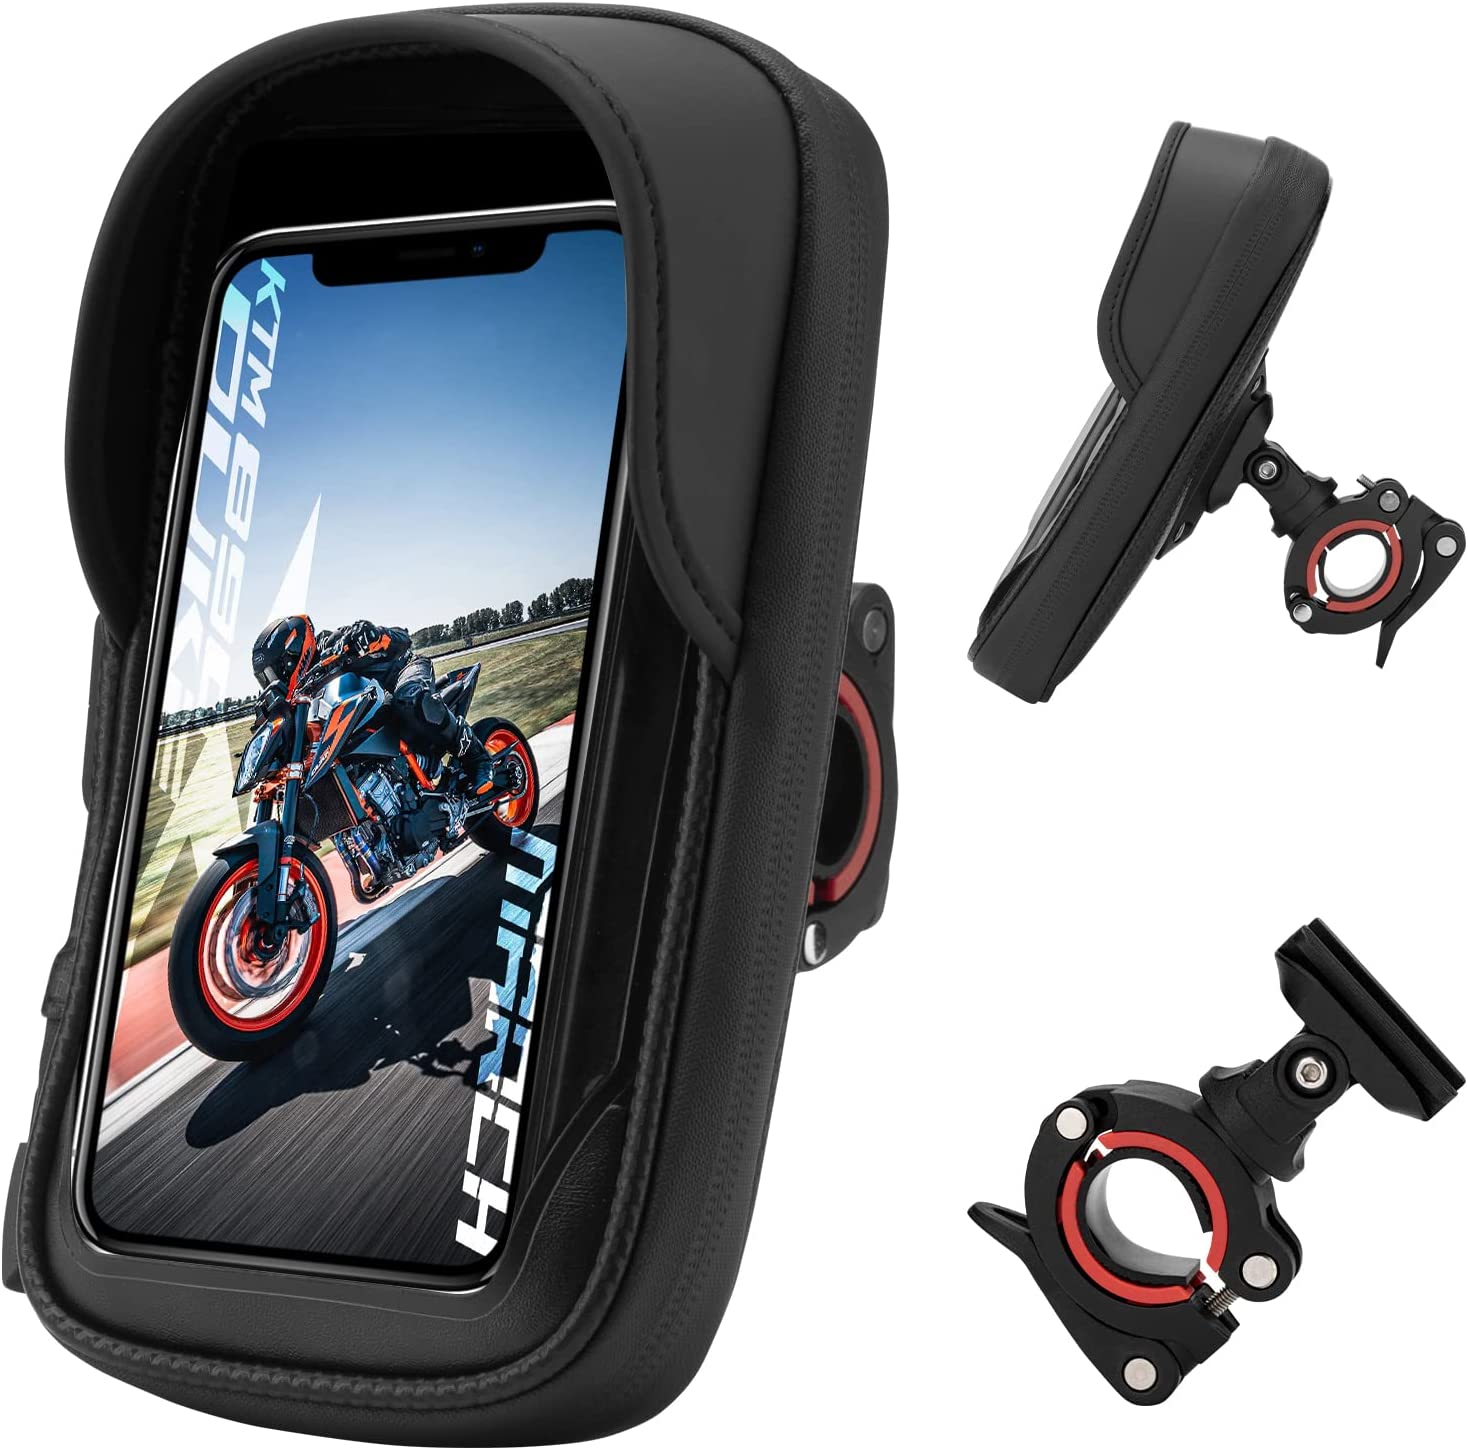 ROCKBROS Motorcycle Phone Mount Waterproof Handlebar Bag Phones Below